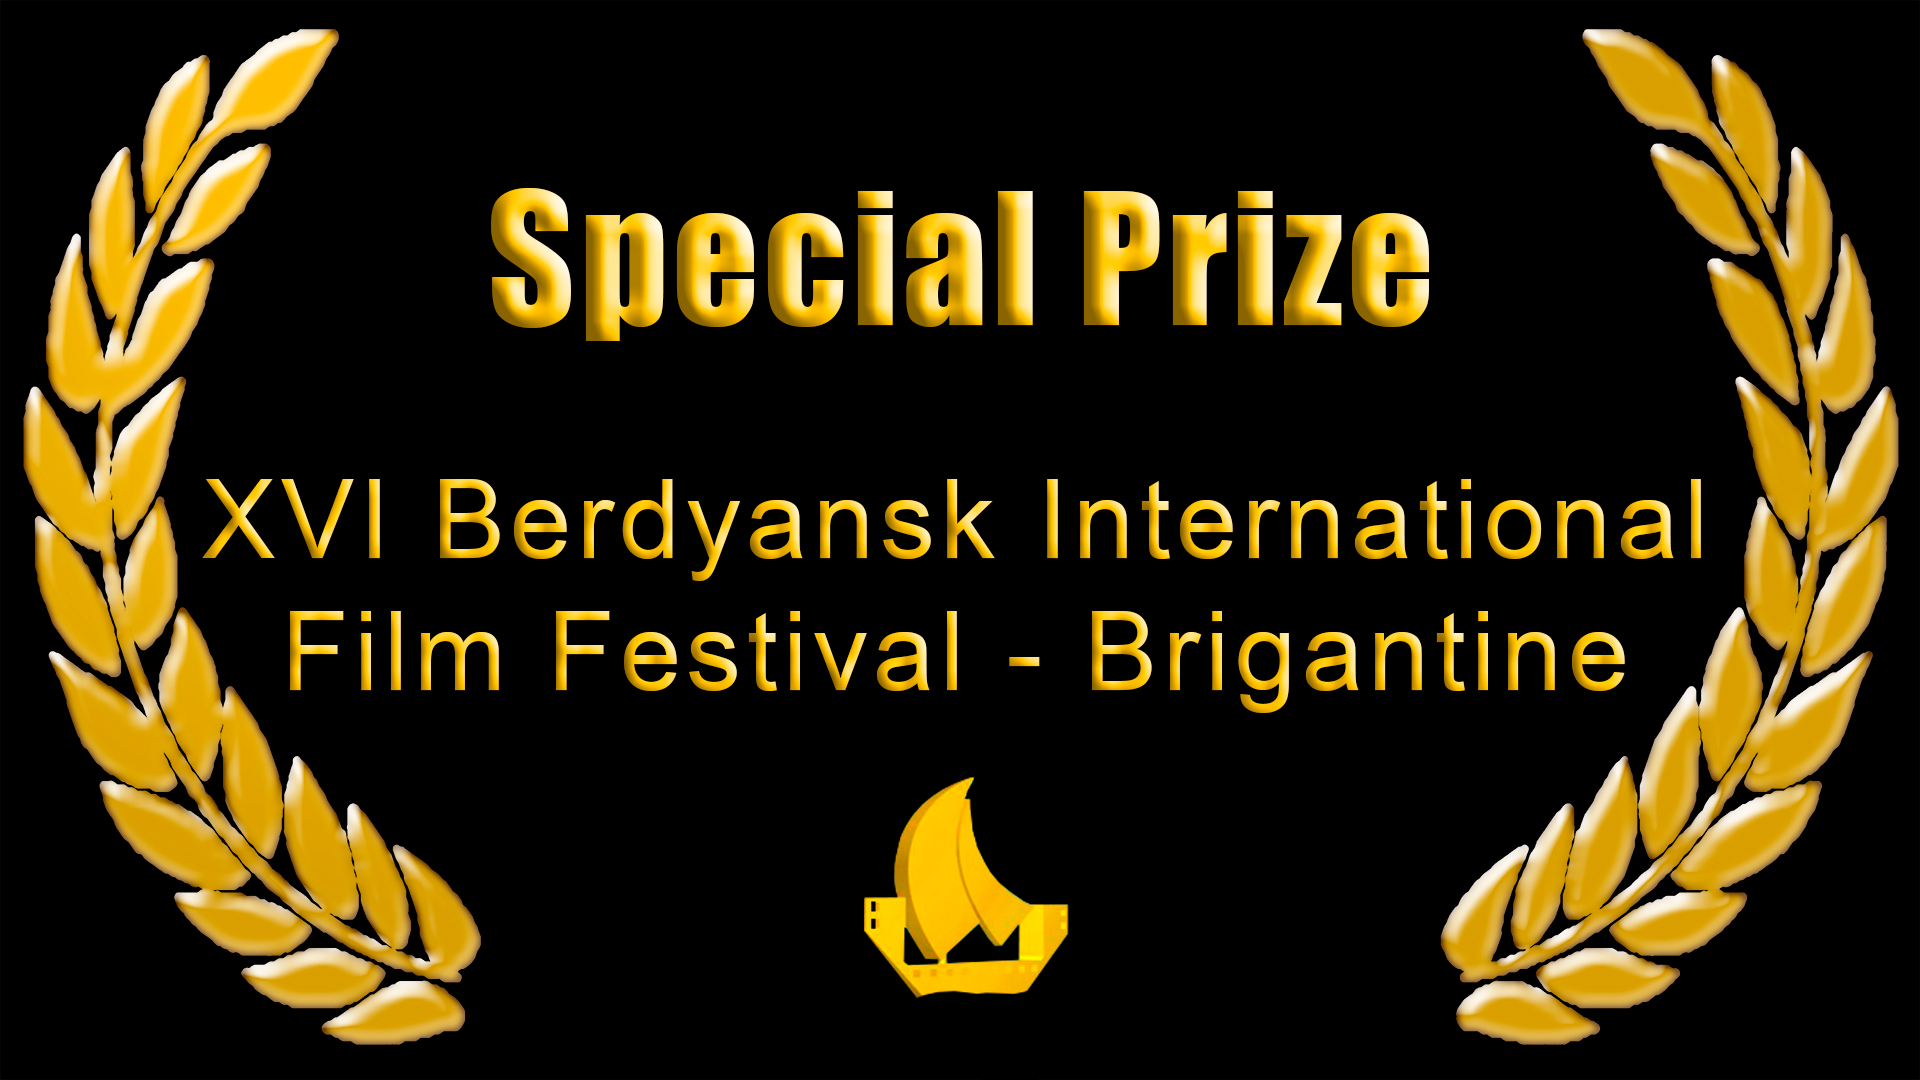 Berdyansk International Film Festival 2013